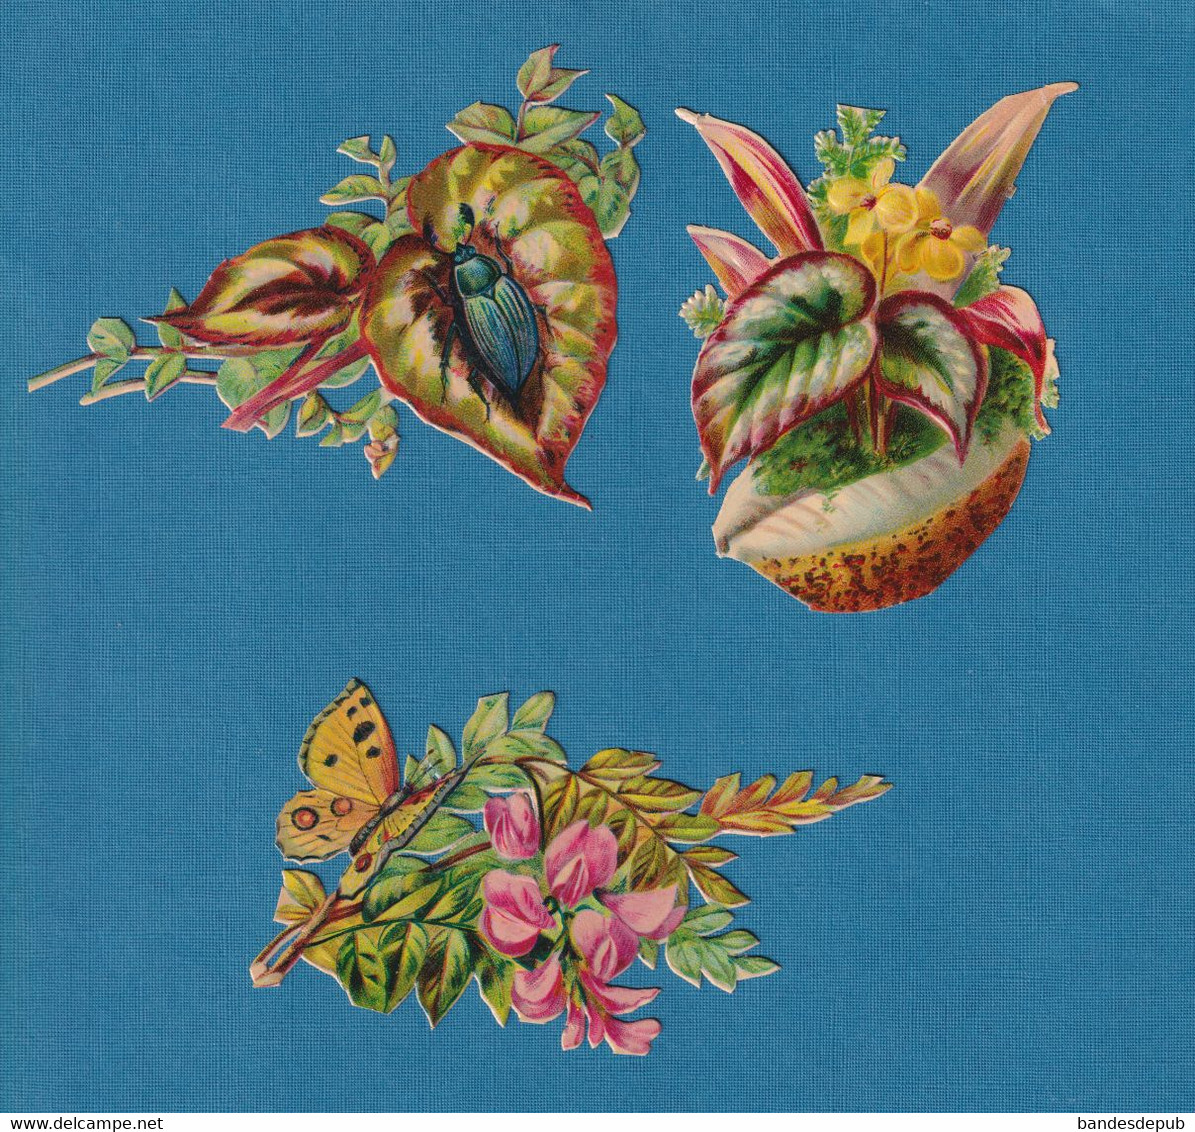 Chromo Decoupis Gaufré  Fleurs Plantes Insecte Coquillage Papillon En Très Bel état 1890 Environ 9 Cm - Bloemen